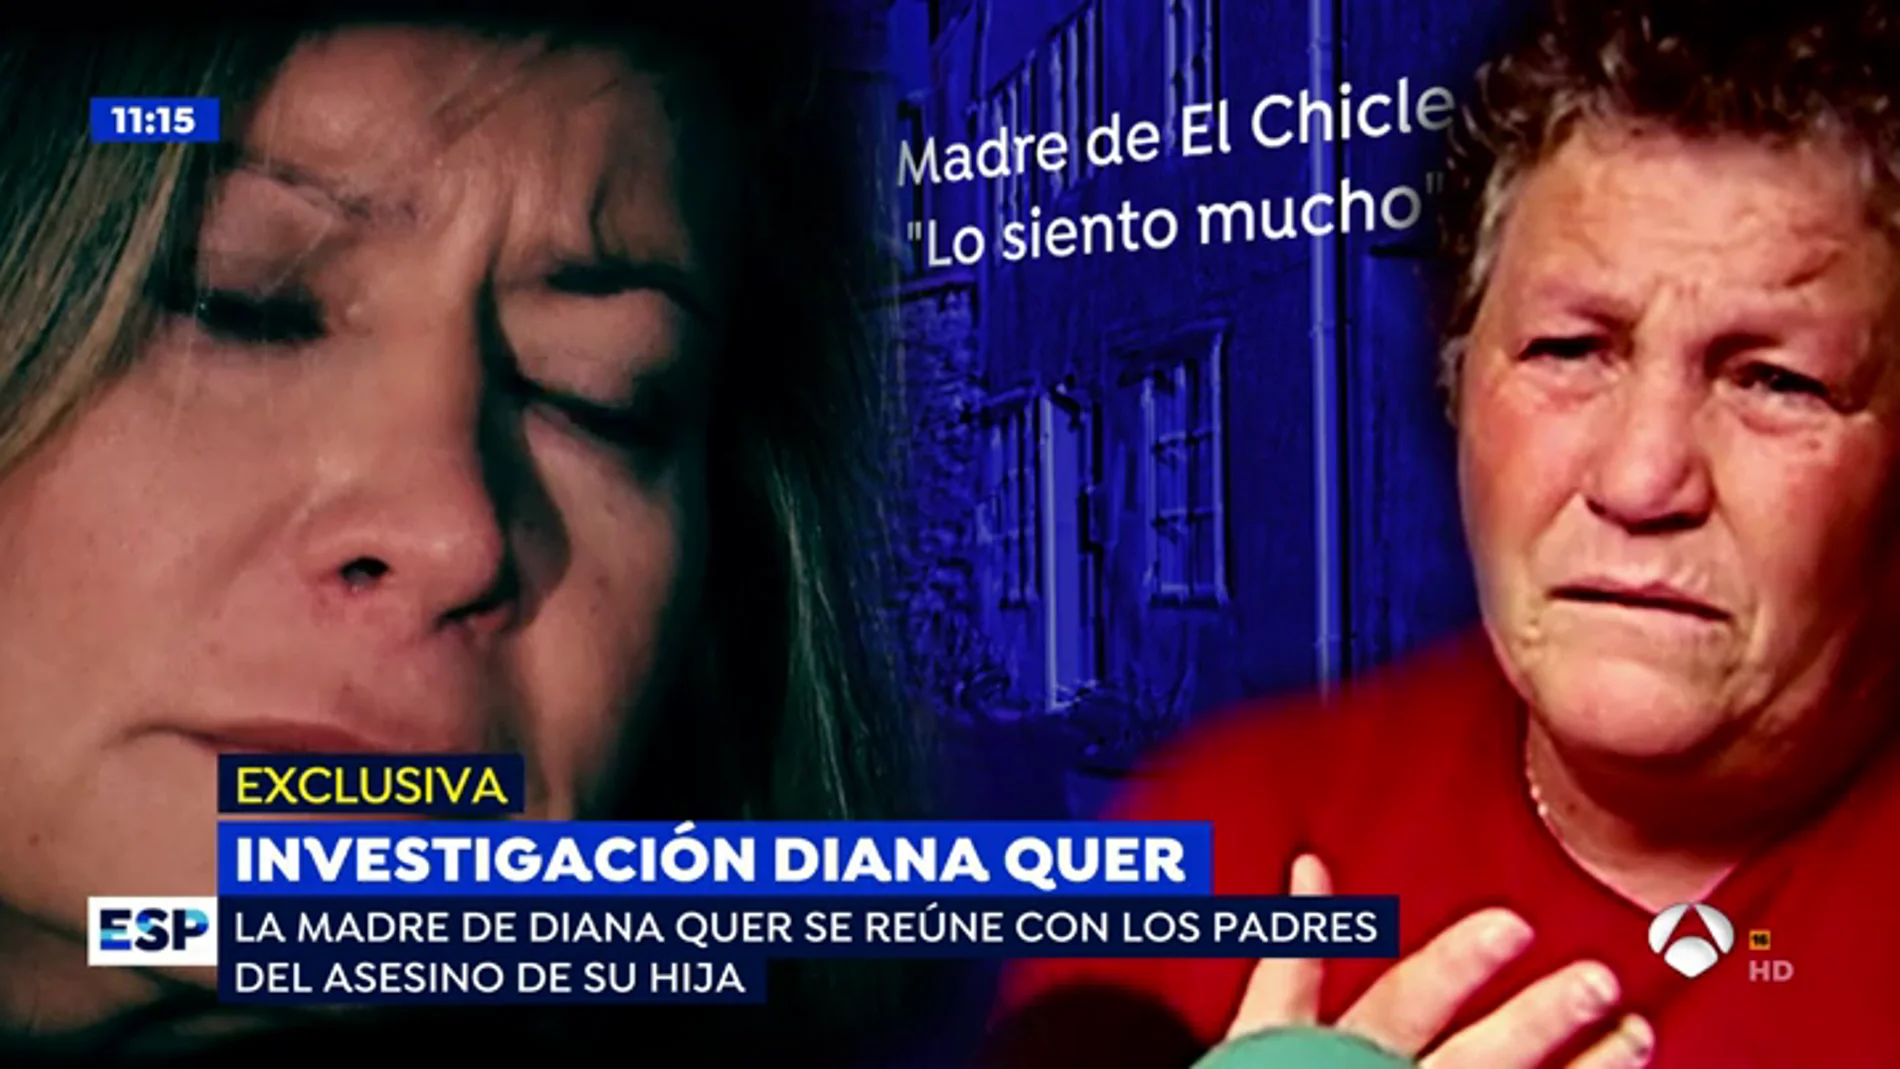 La madre de Diana Quer, a la madre de 'el chicle': "No tienes culpa de lo que hizo tu hijo"